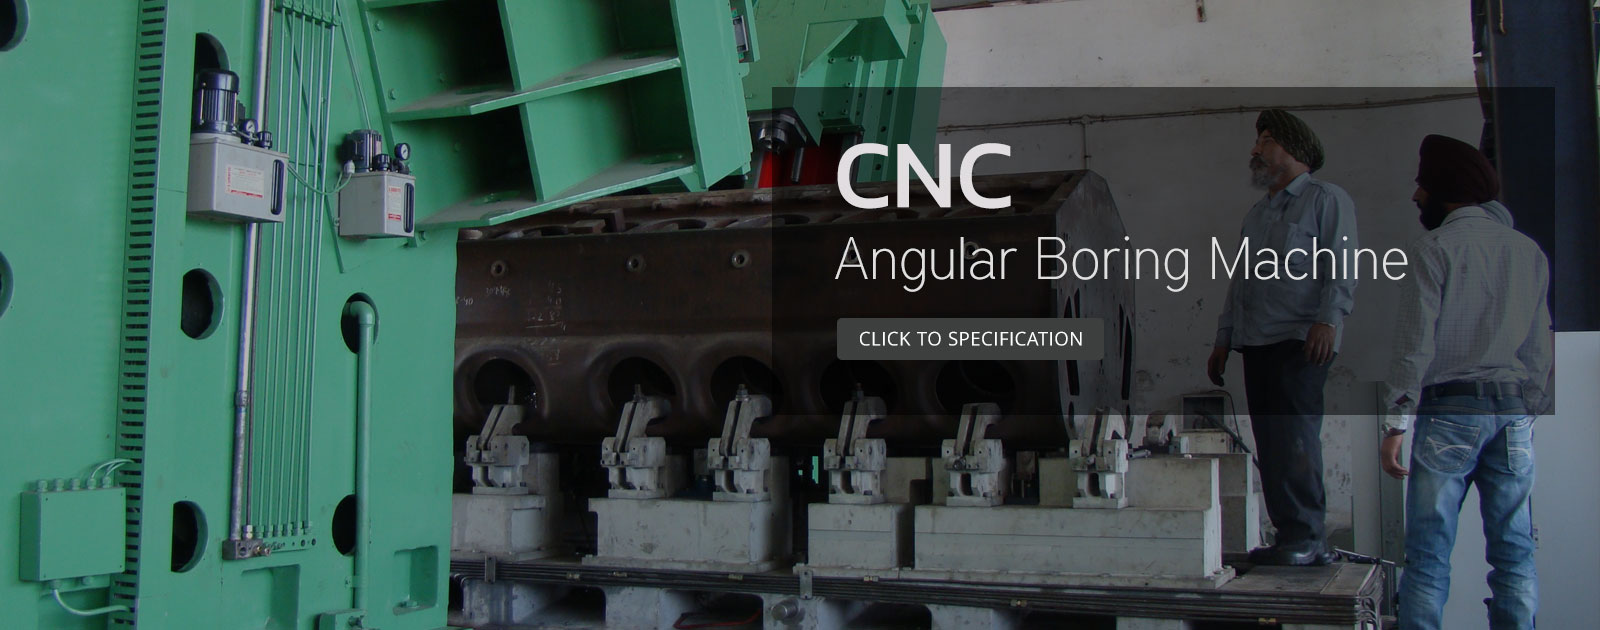 cnc angular boring machine